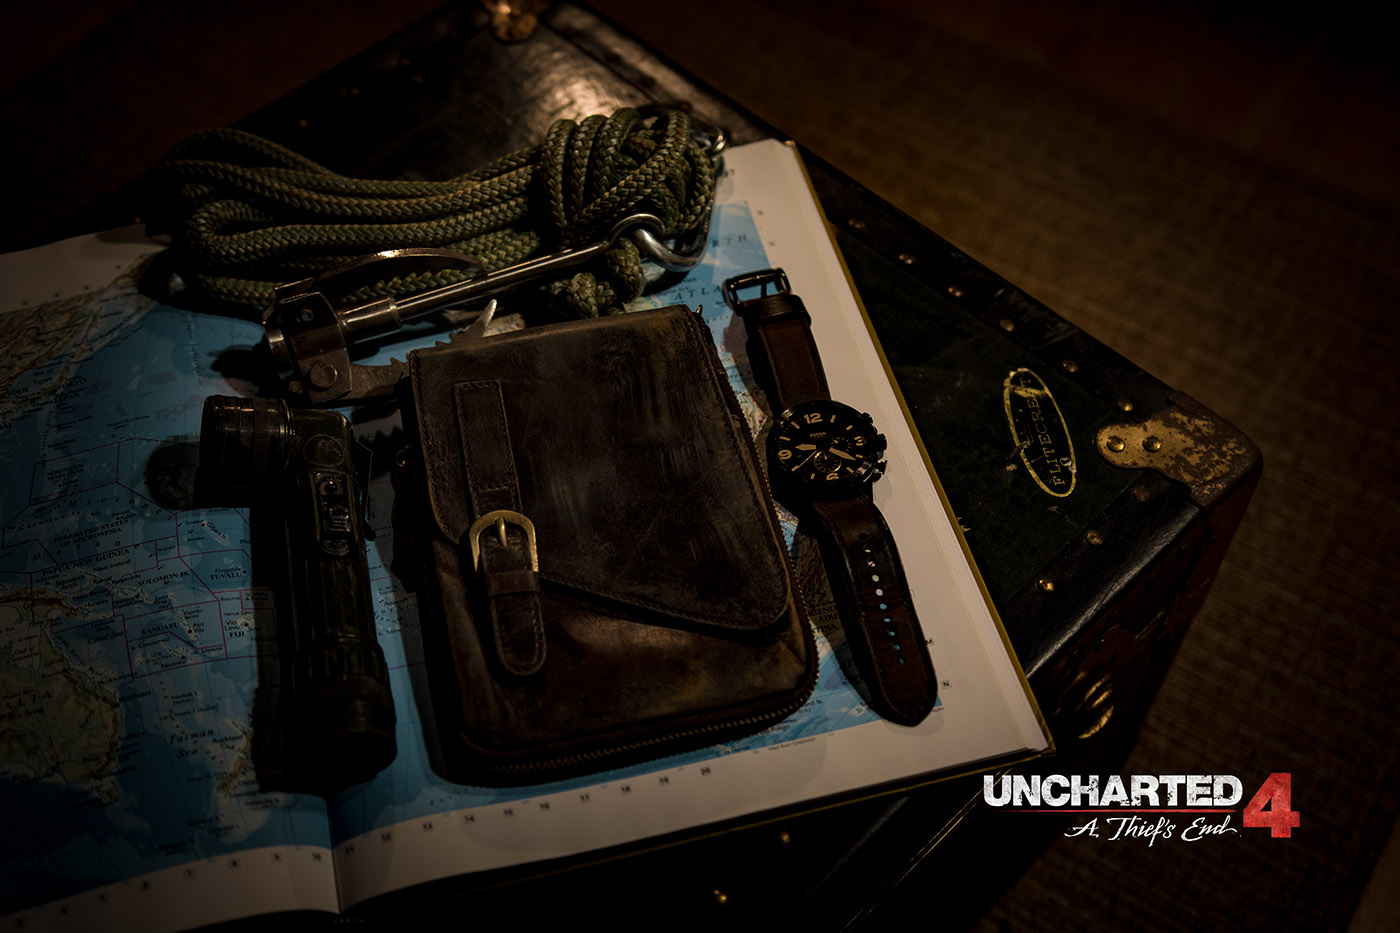 Cosplay uncharted Uncharted4 NathanDrake naughtydog thelostlegacy portaits studio videogame fanart